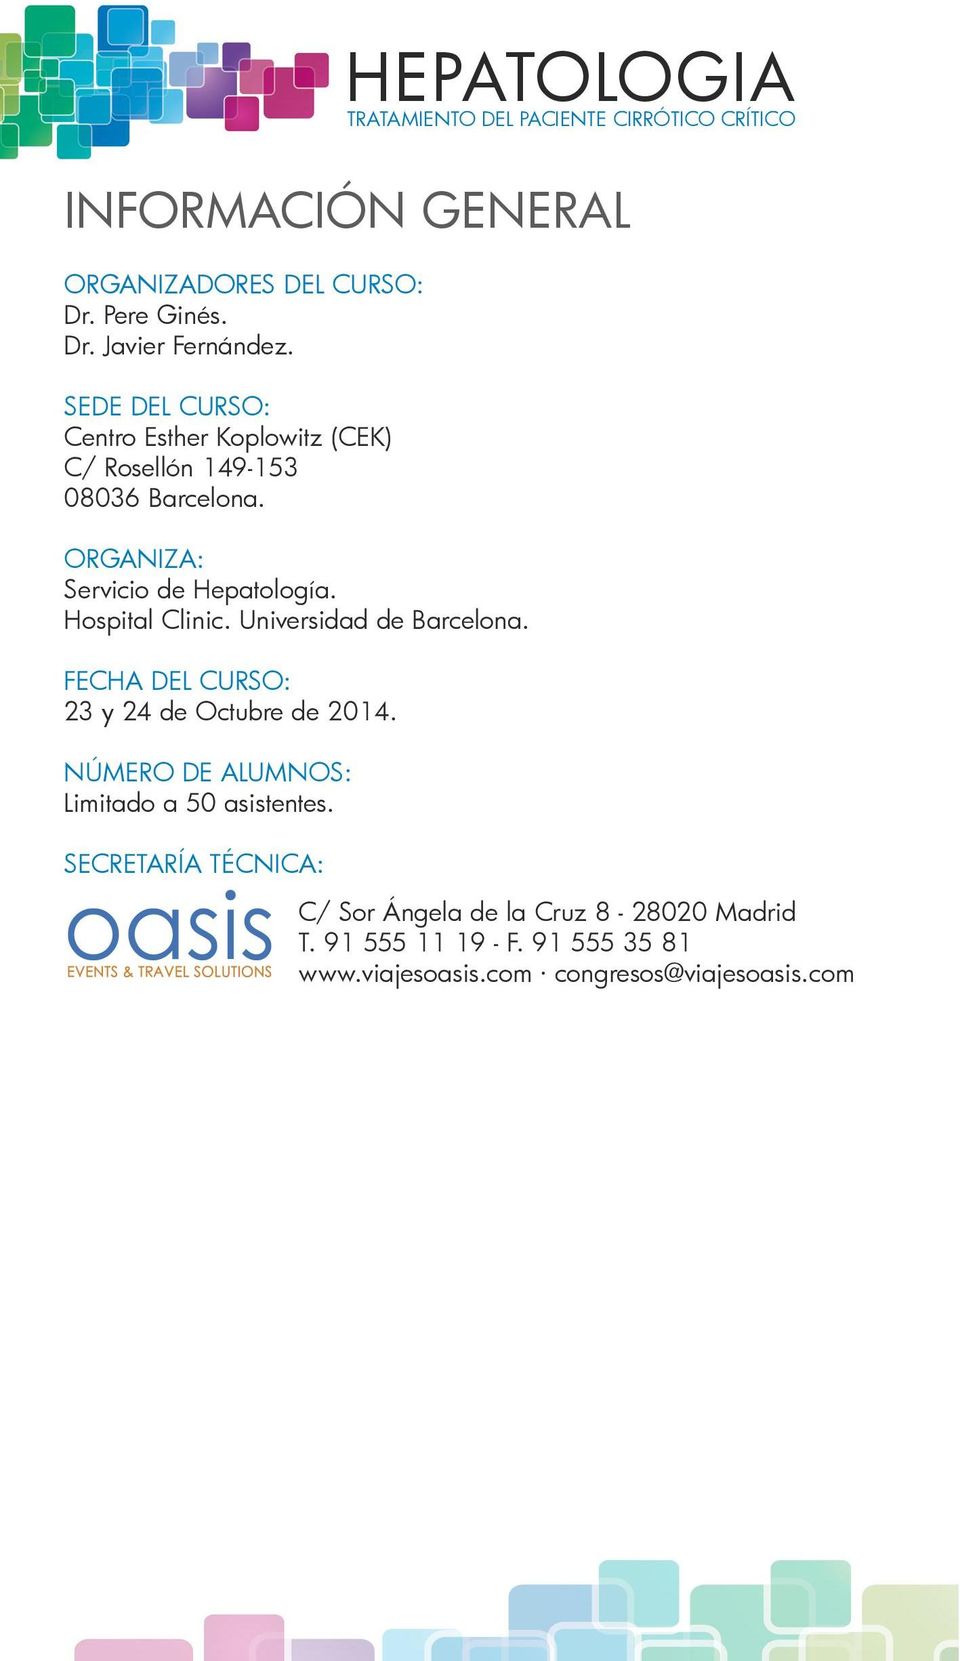 Hospital Clinic. Universidad de Barcelona. FECHA DEL CURSO: 23 y 24 de Octubre de 2014.